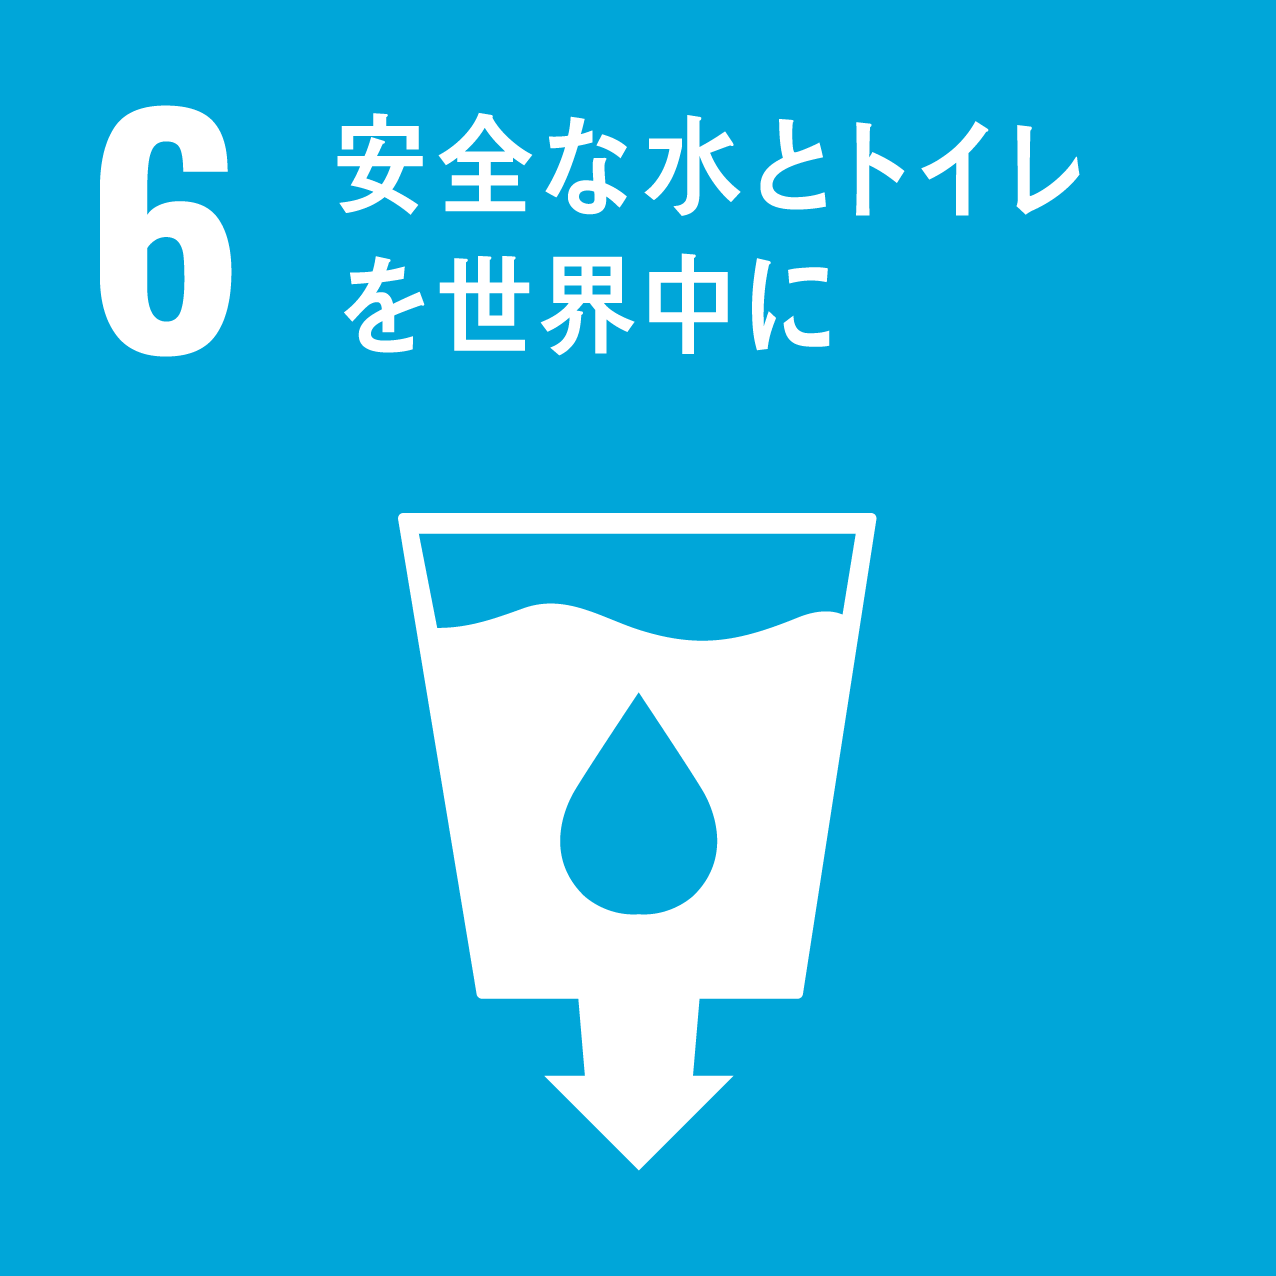 SDGs4